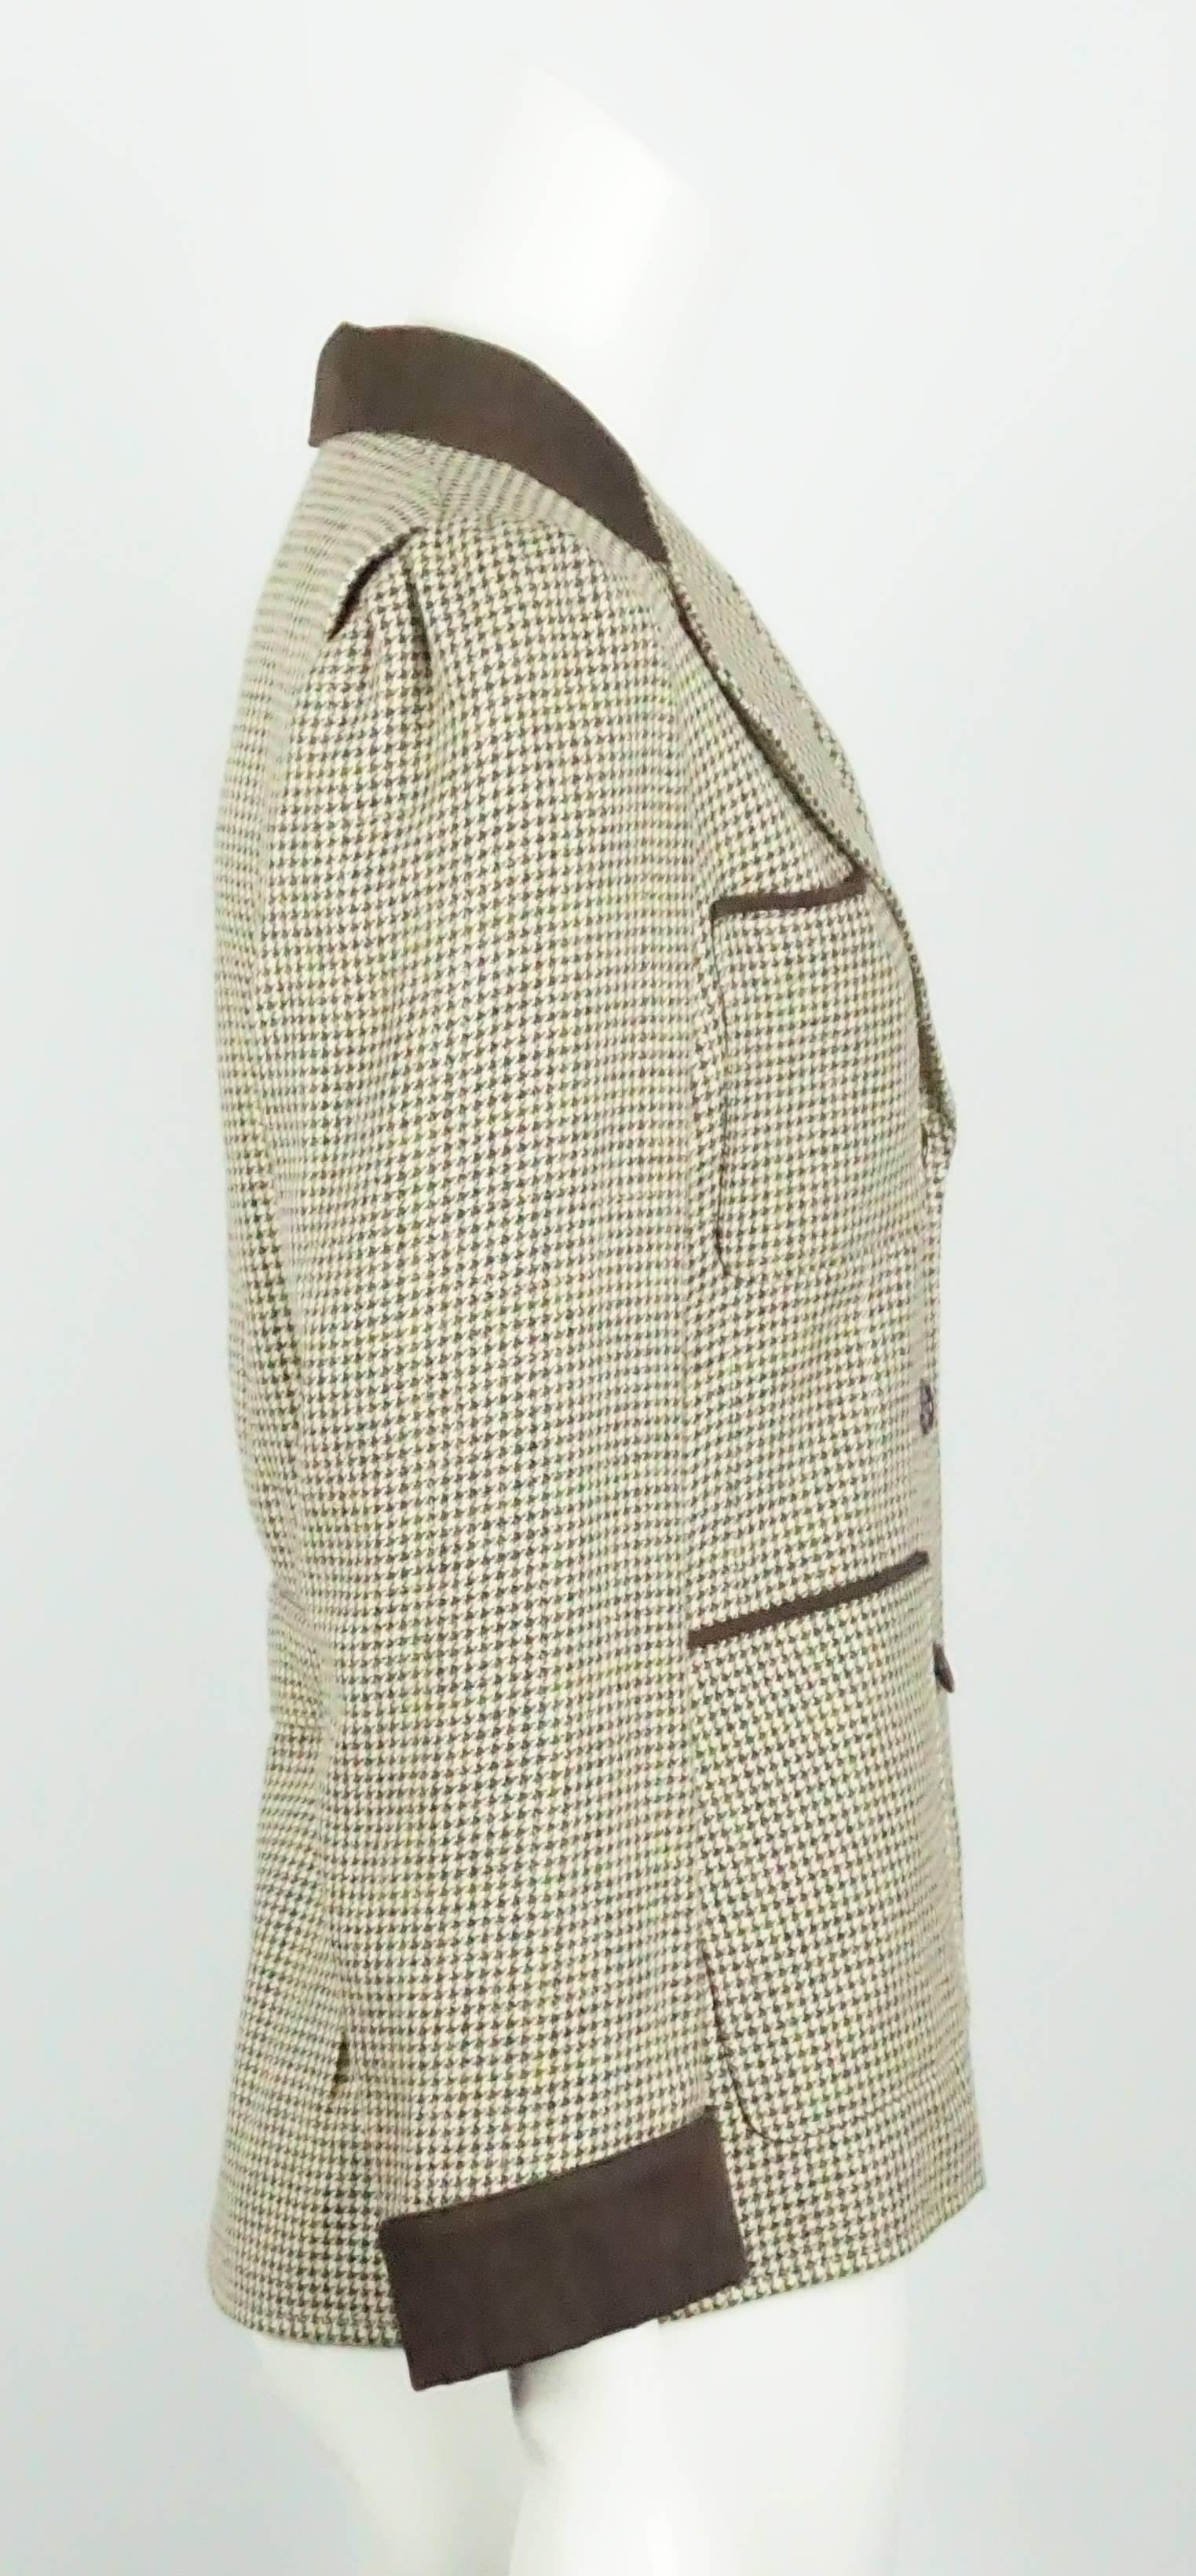 Yves Saint Laurent Erdton Houdstooth 4 Tasche Wolle Jacke - 40 - 70er Jahre  Dieser zeitlose Klassiker ist perfekt für jede Garderobe. Die Jacke ist in ausgezeichnetem Zustand. Der Wollstoff ist ein brauner und elfenbeinfarbener Hahnentritt mit